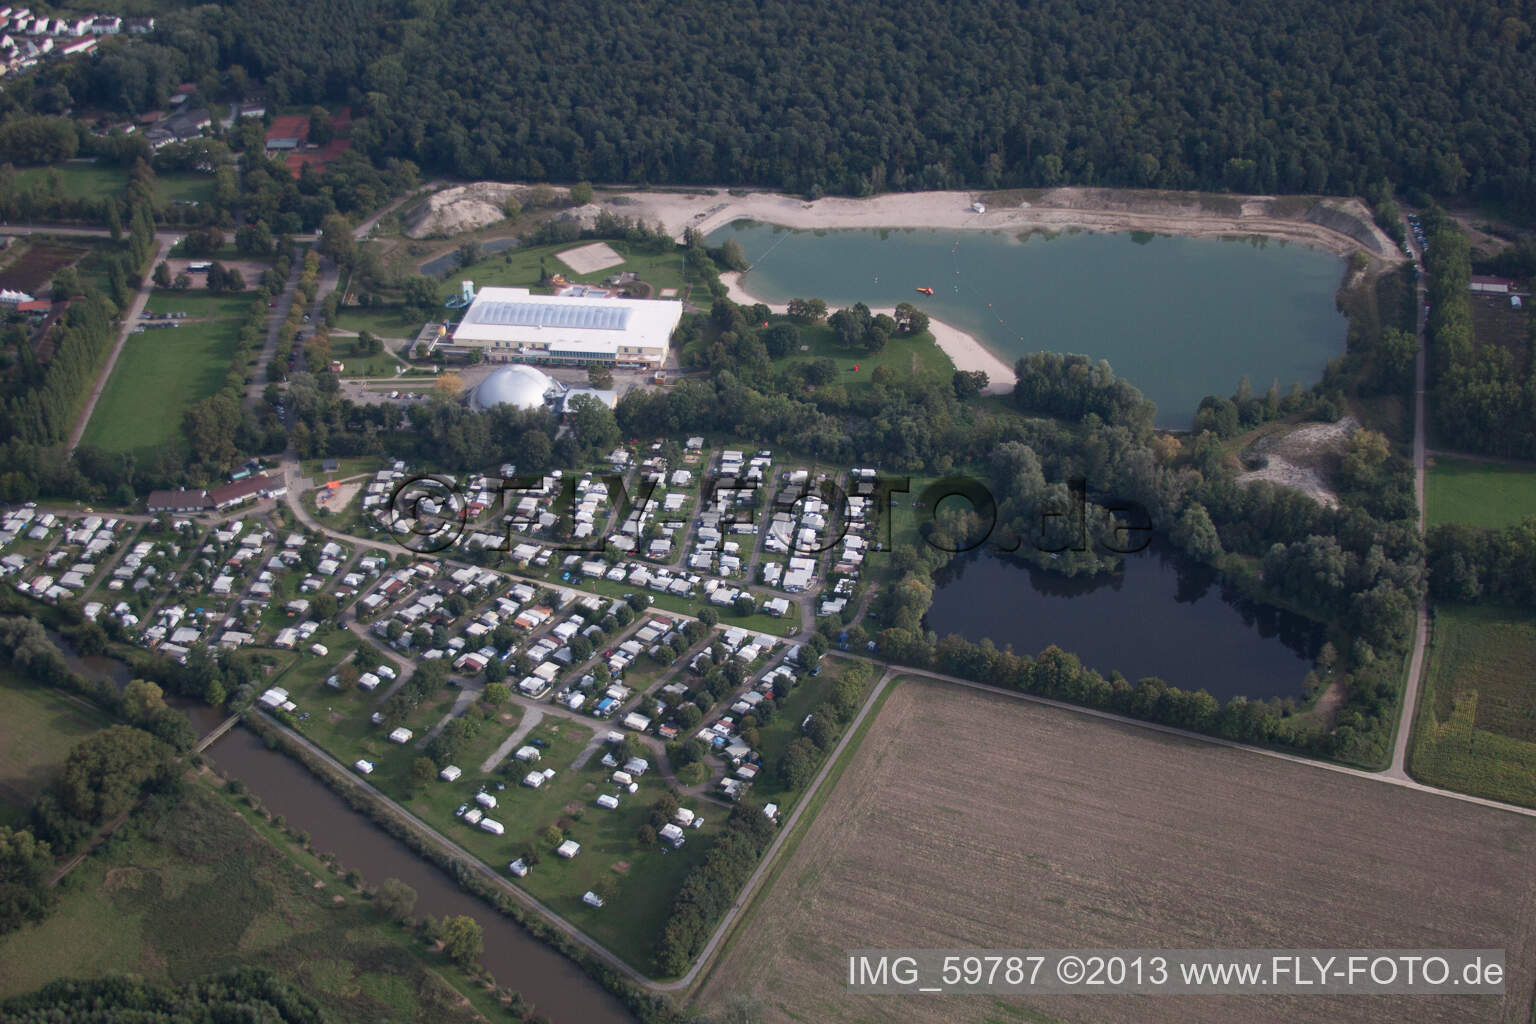 Vue aérienne de Camping à la base de loisirs Moby Dick à Rülzheim dans le département Rhénanie-Palatinat, Allemagne